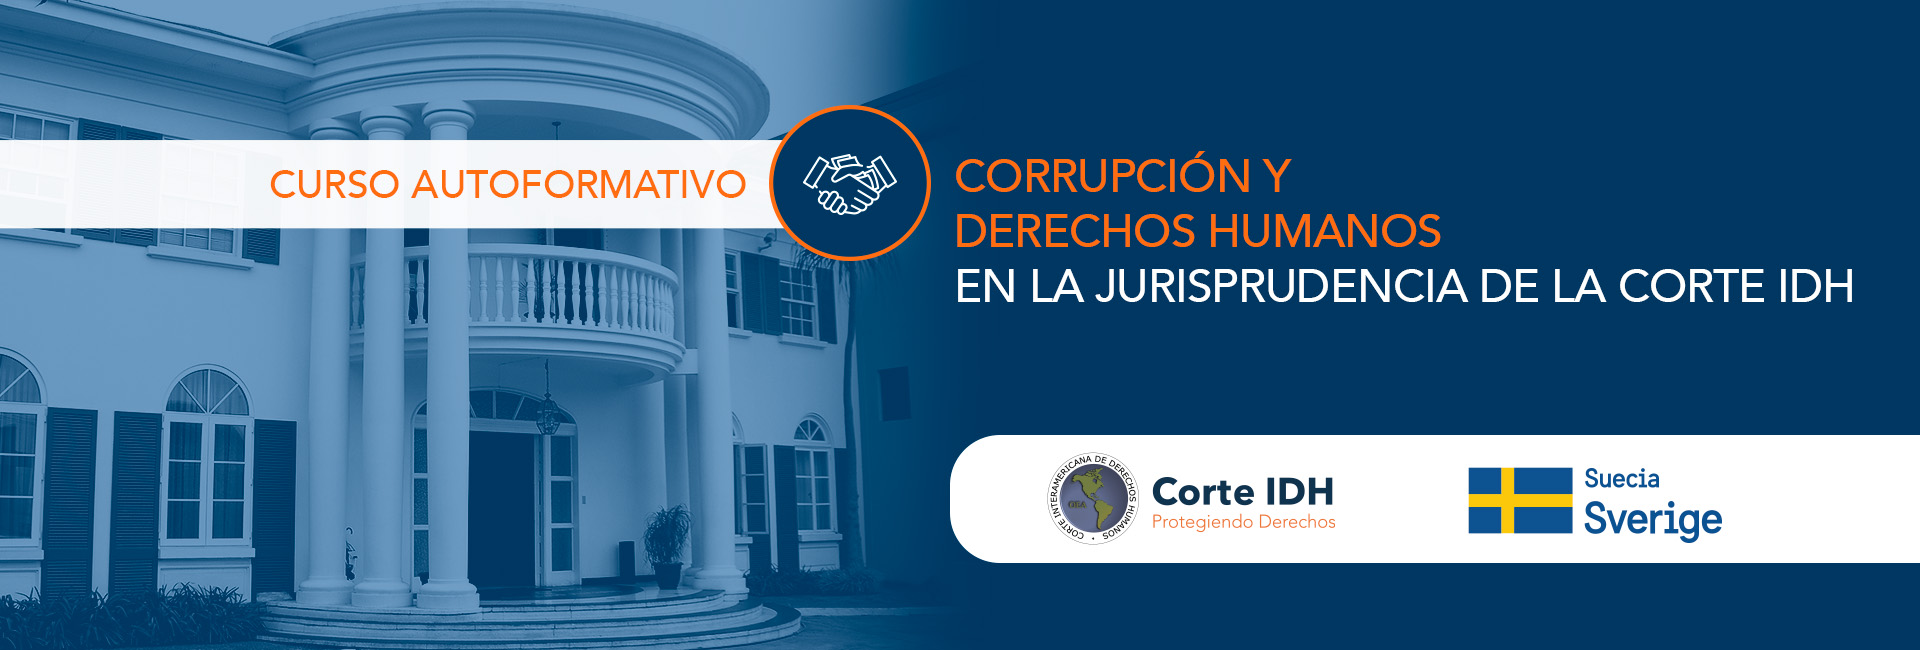 Curso Autoformativo: Corrupción y derechos humanos en la jurisprudencia del al Corte IDH.